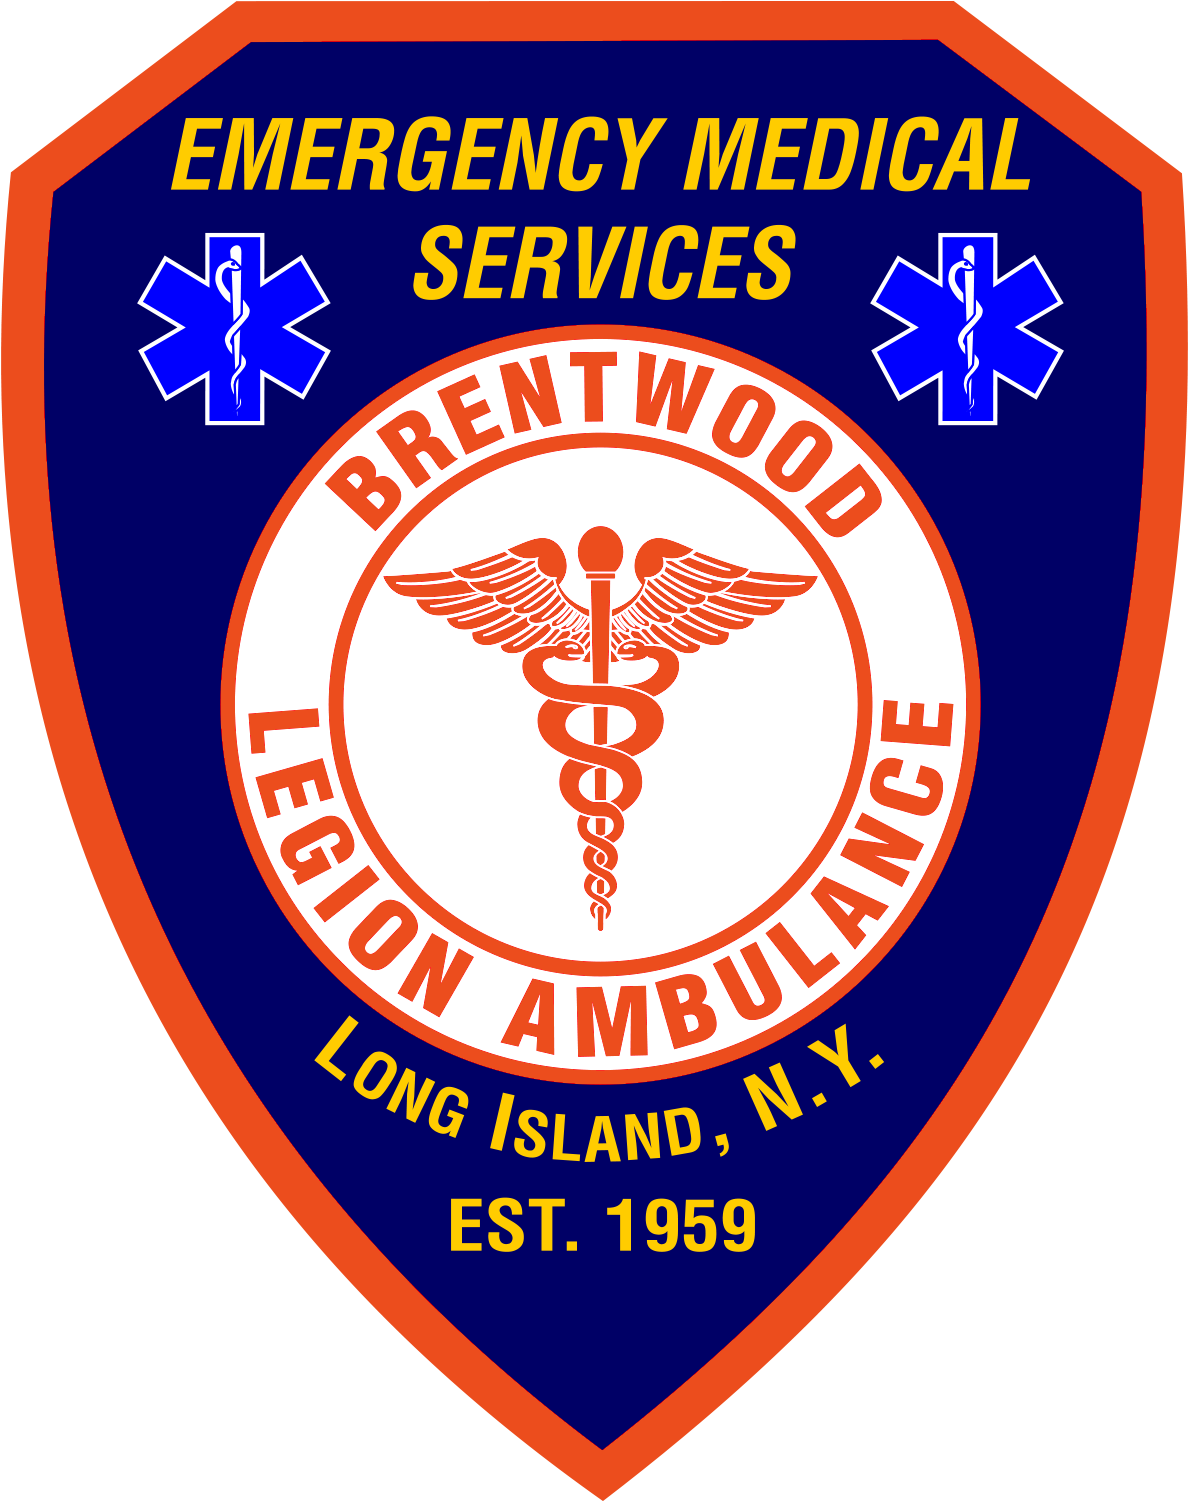 Logo - Brentwood Legion Ambulance (1269x1500)